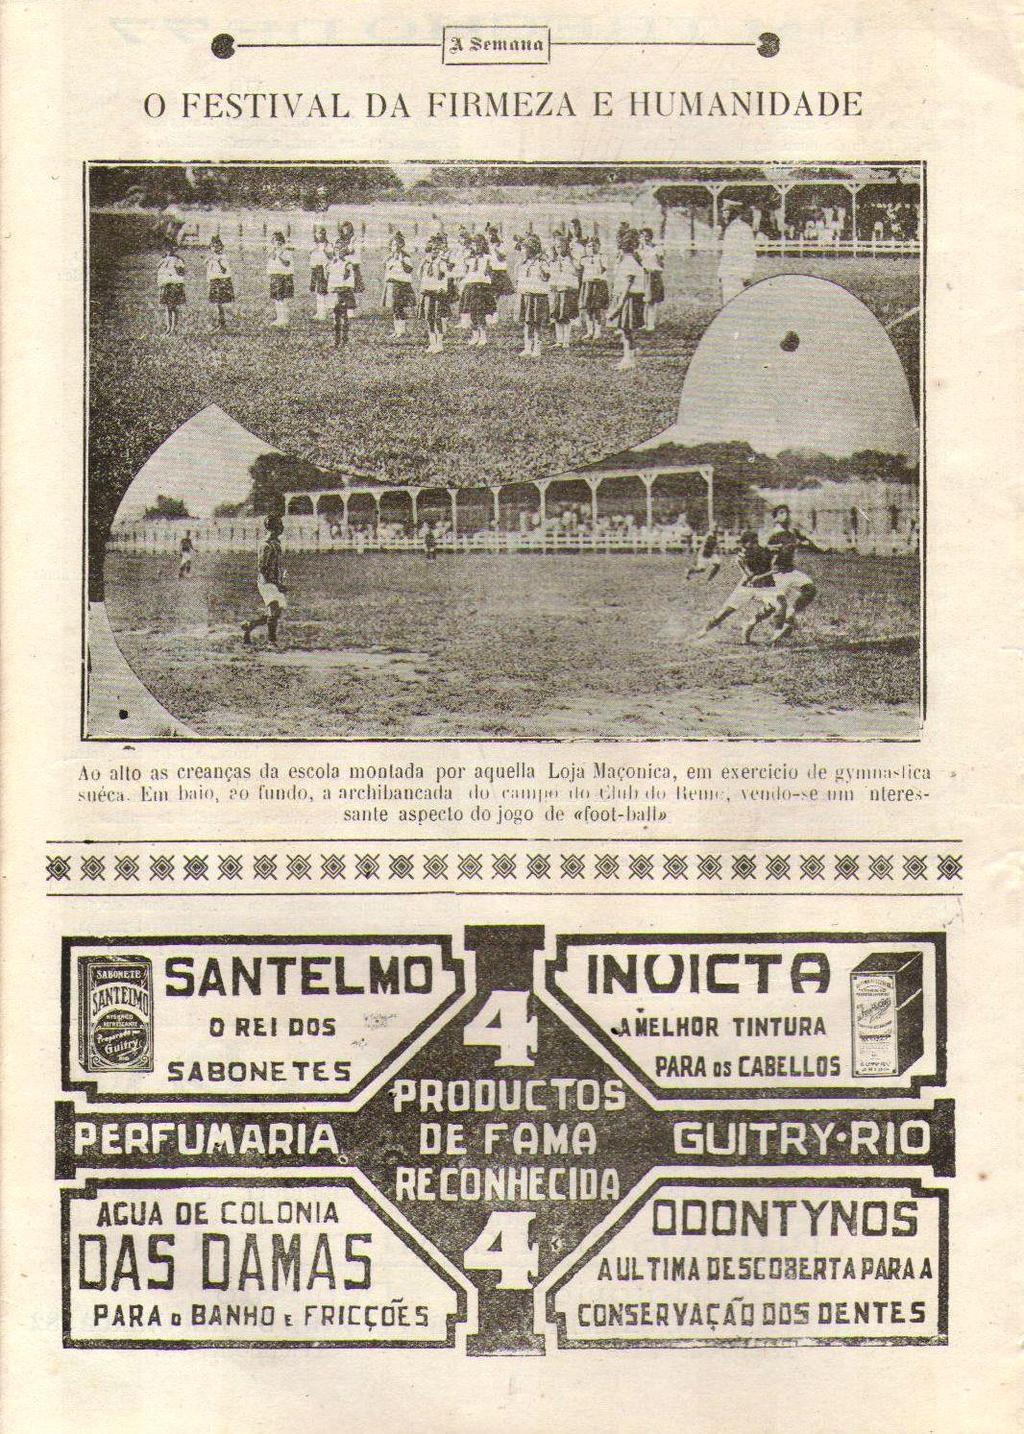 142 Imagem 13 - Festival esportivo promovido pela Loja Maçônica Firmeza e Humanidade. No campo do Clube do Remo. Fonte: Revista A Semana, 18/09/1920.